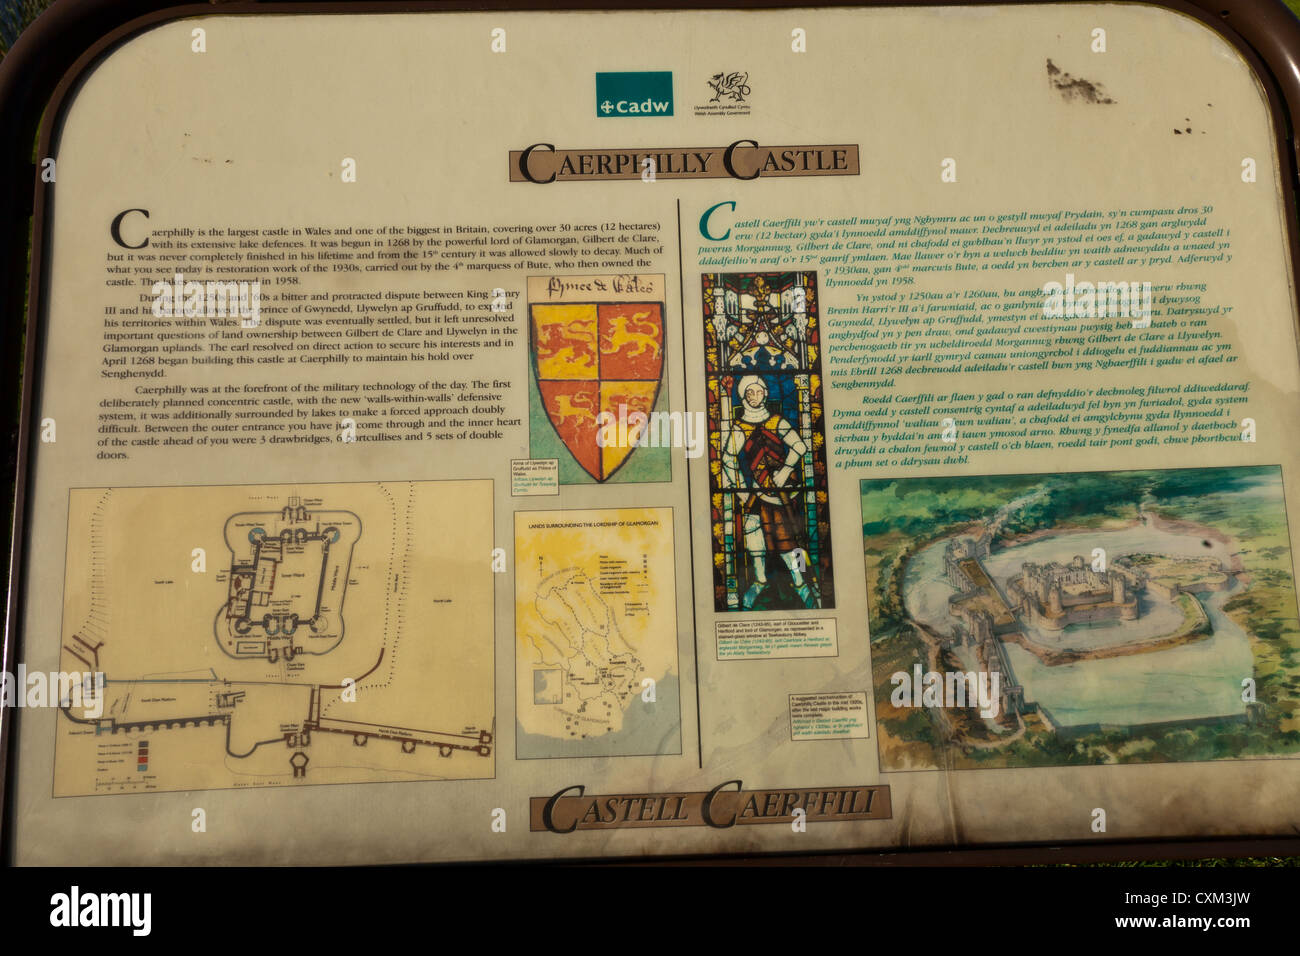 Château de Caerphilly avis explication historique conseil, expliquant l'histoire et les faits concernant le château. Banque D'Images